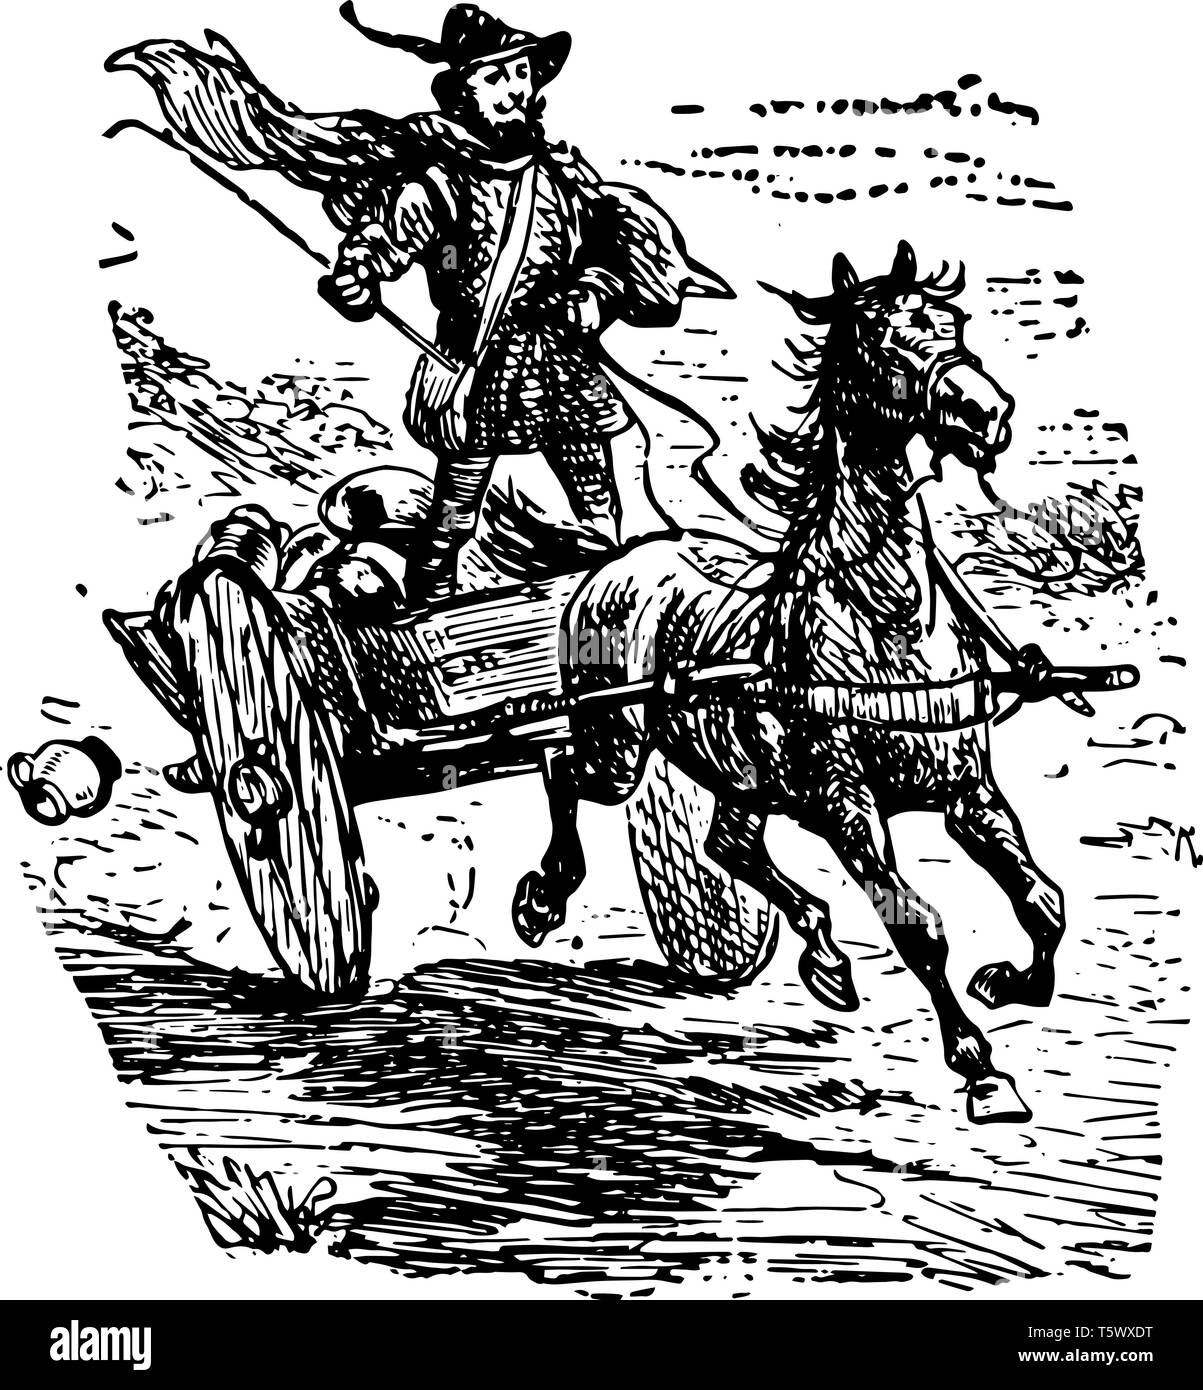 Un homme debout sur le cheval panier tenant un bâton dans sa main droite vintage dessin ou gravure illustration Illustration de Vecteur